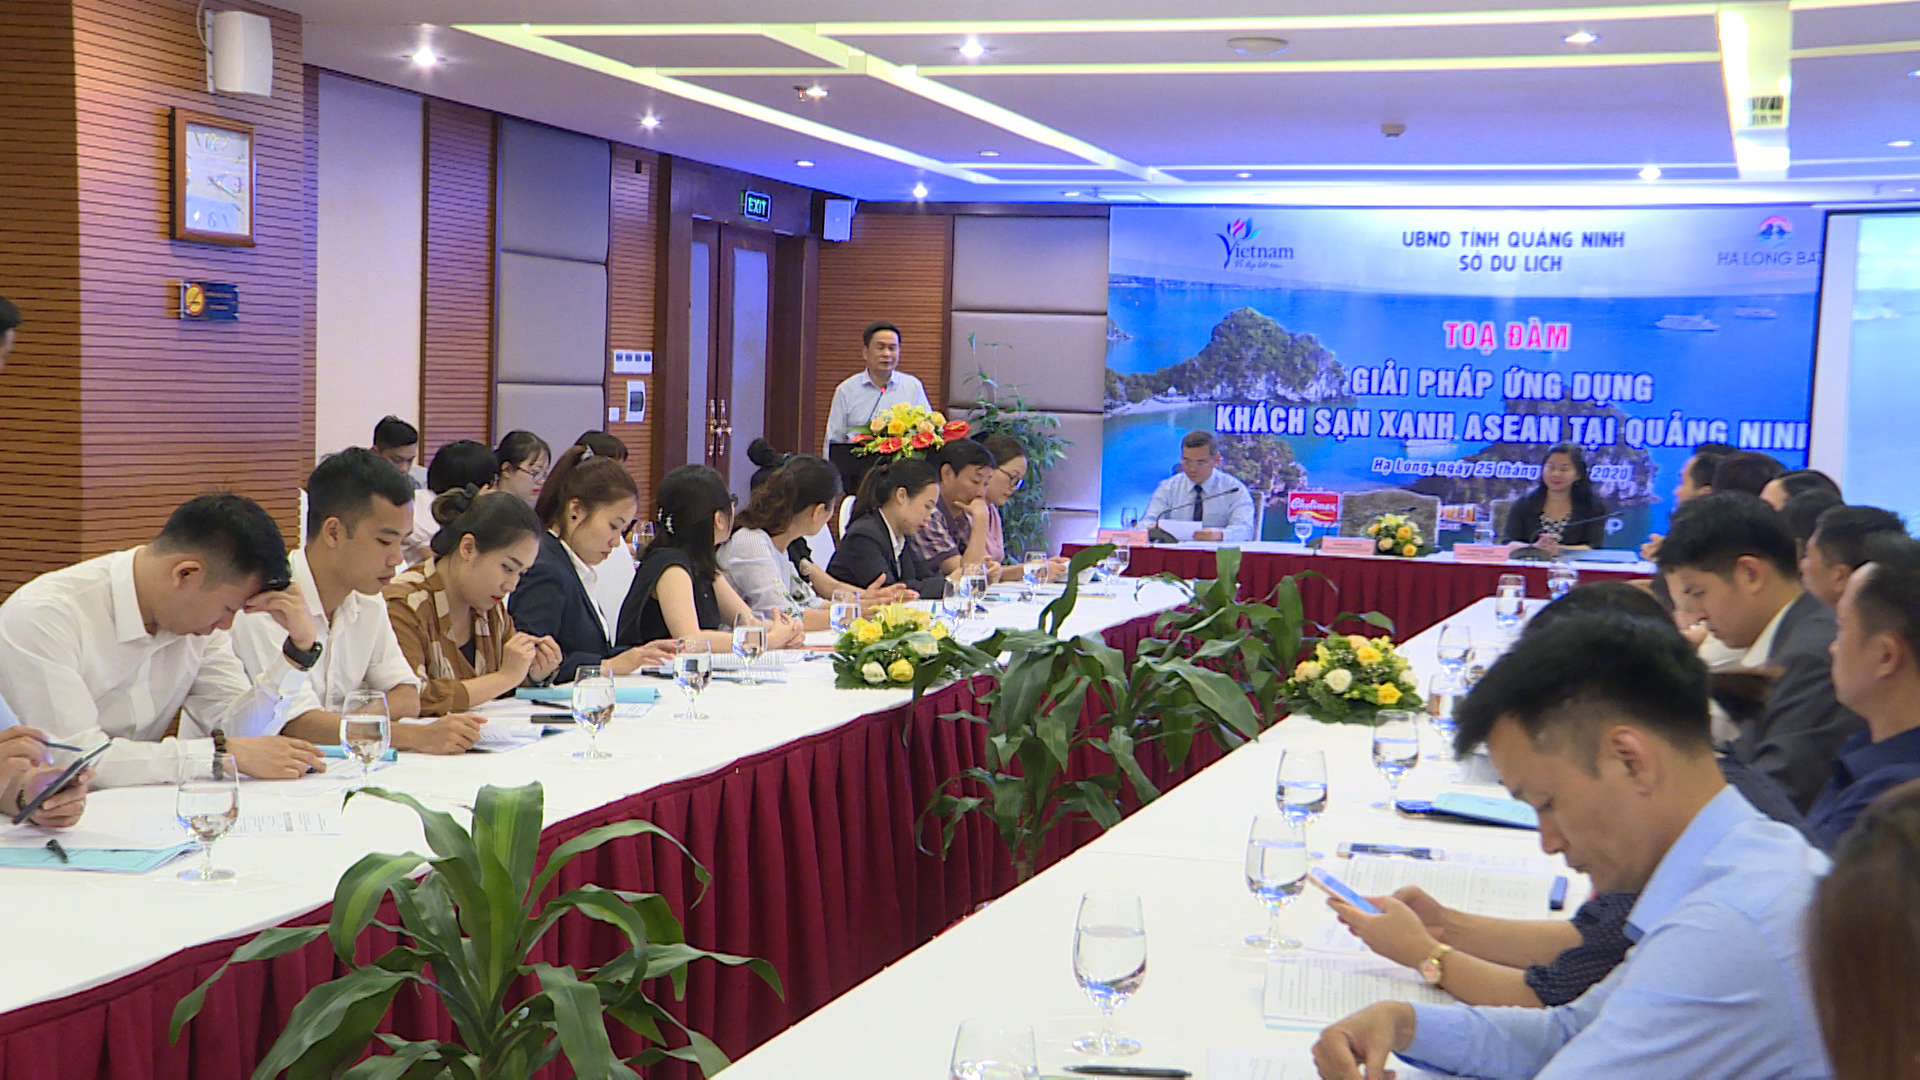 Toạ đàm giải pháp ứng dụng khách sạn xanh ASEAN tại Quảng Ninh